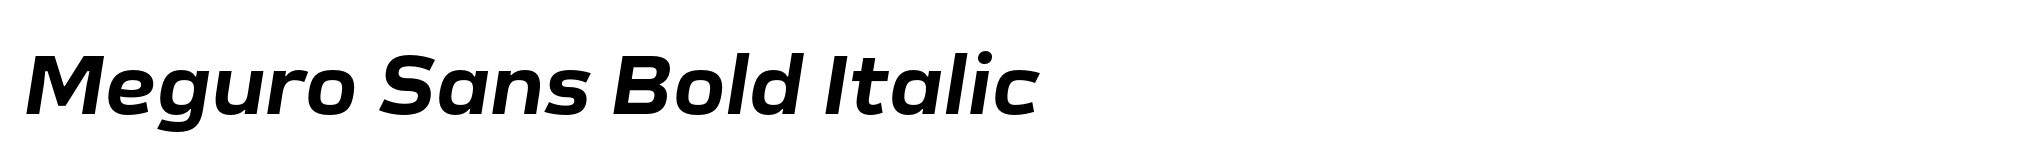 Meguro Sans Bold Italic image